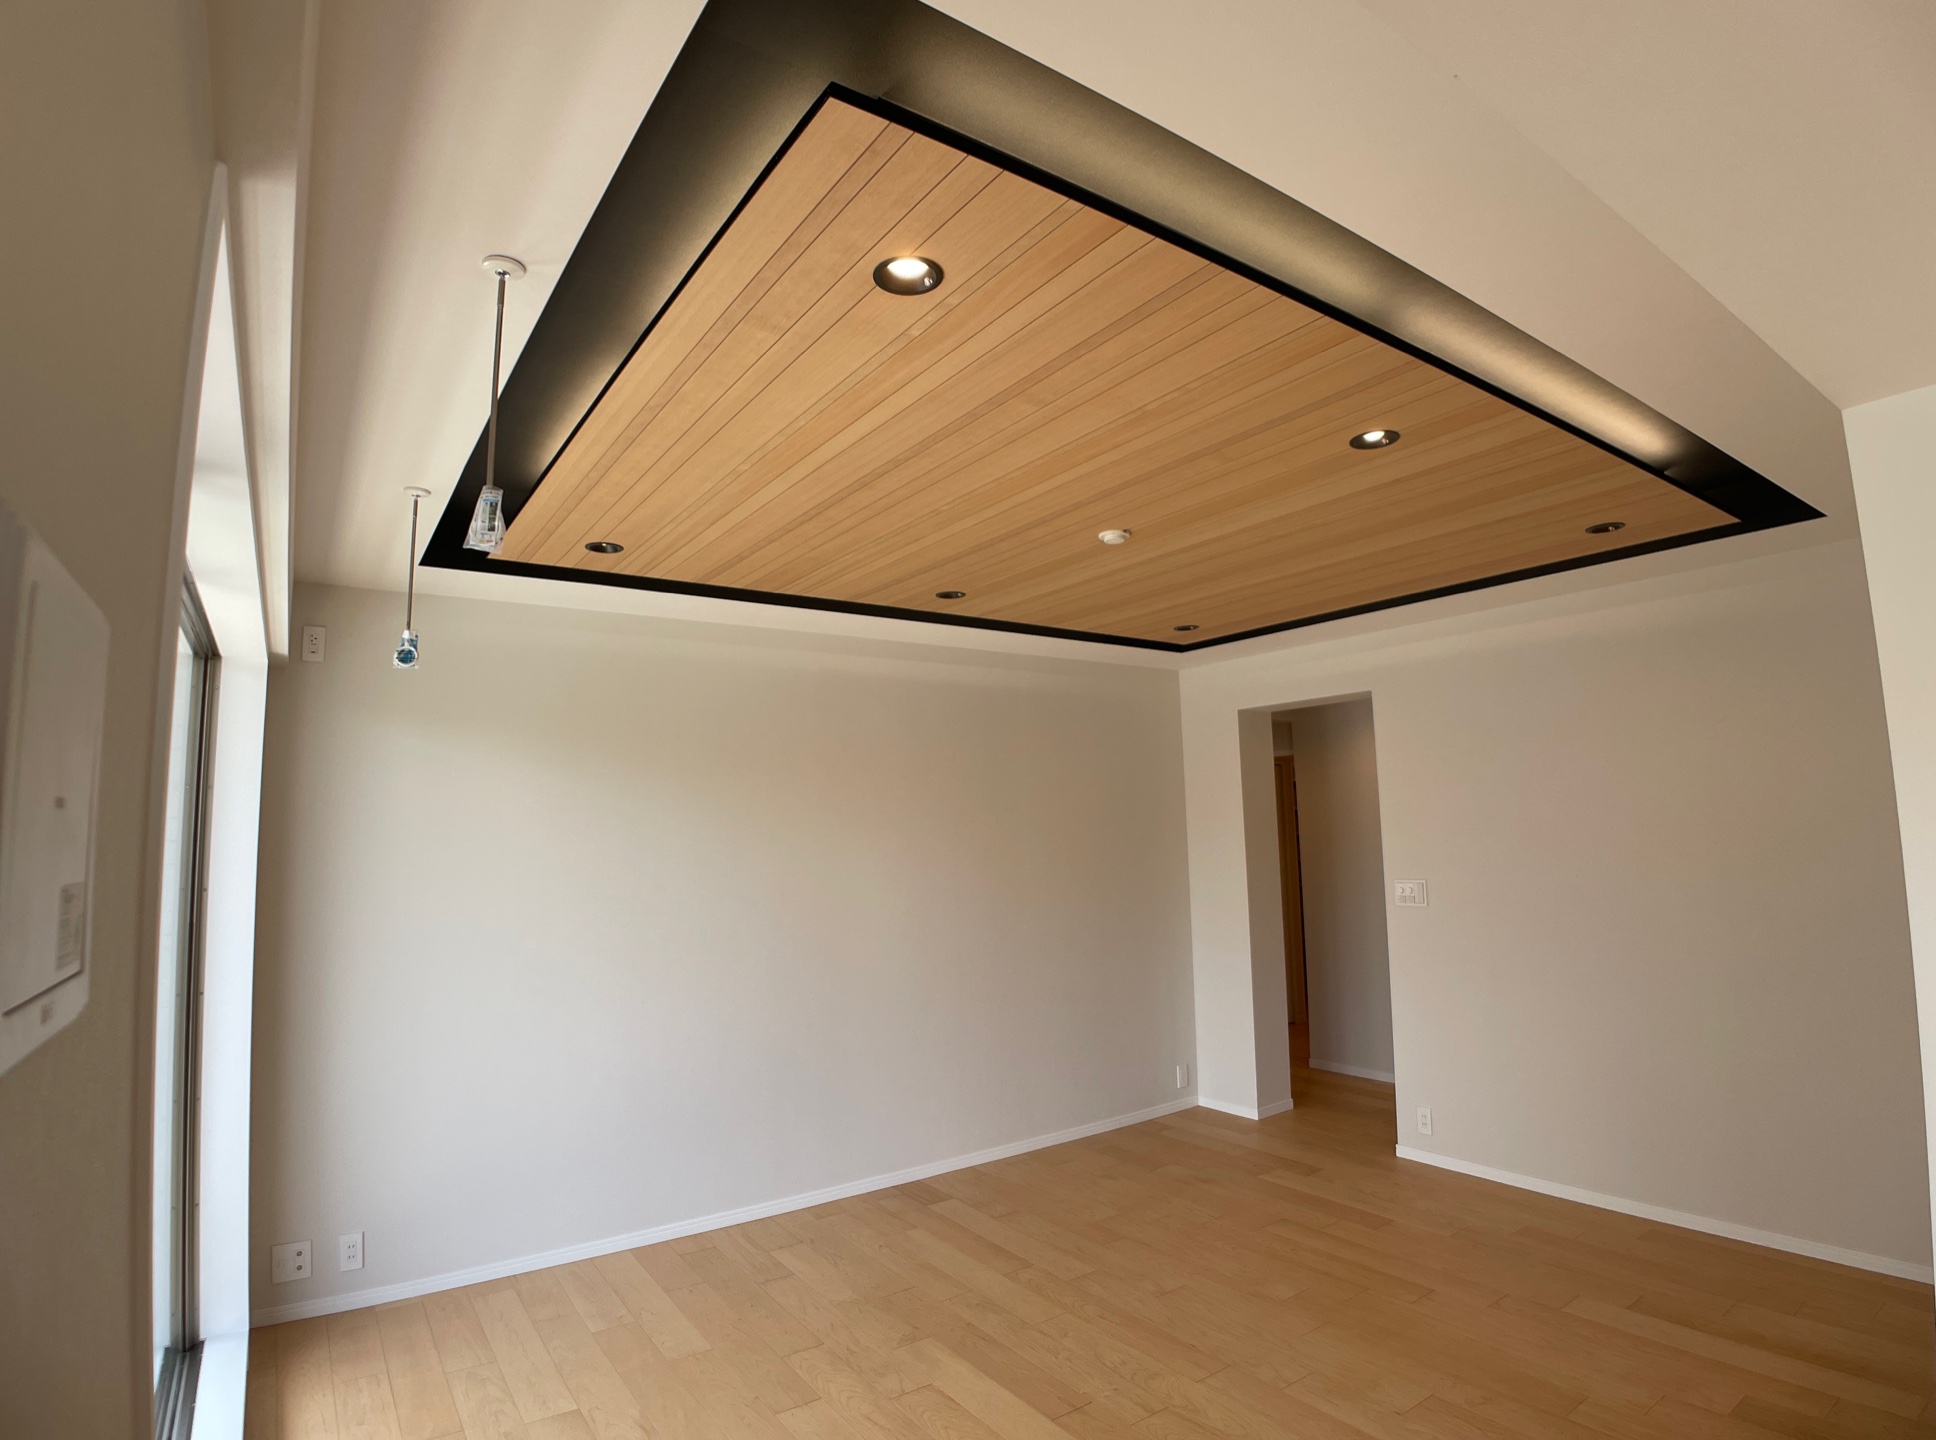 折下げ天井にし、天井板材と間接照明を設置した事例